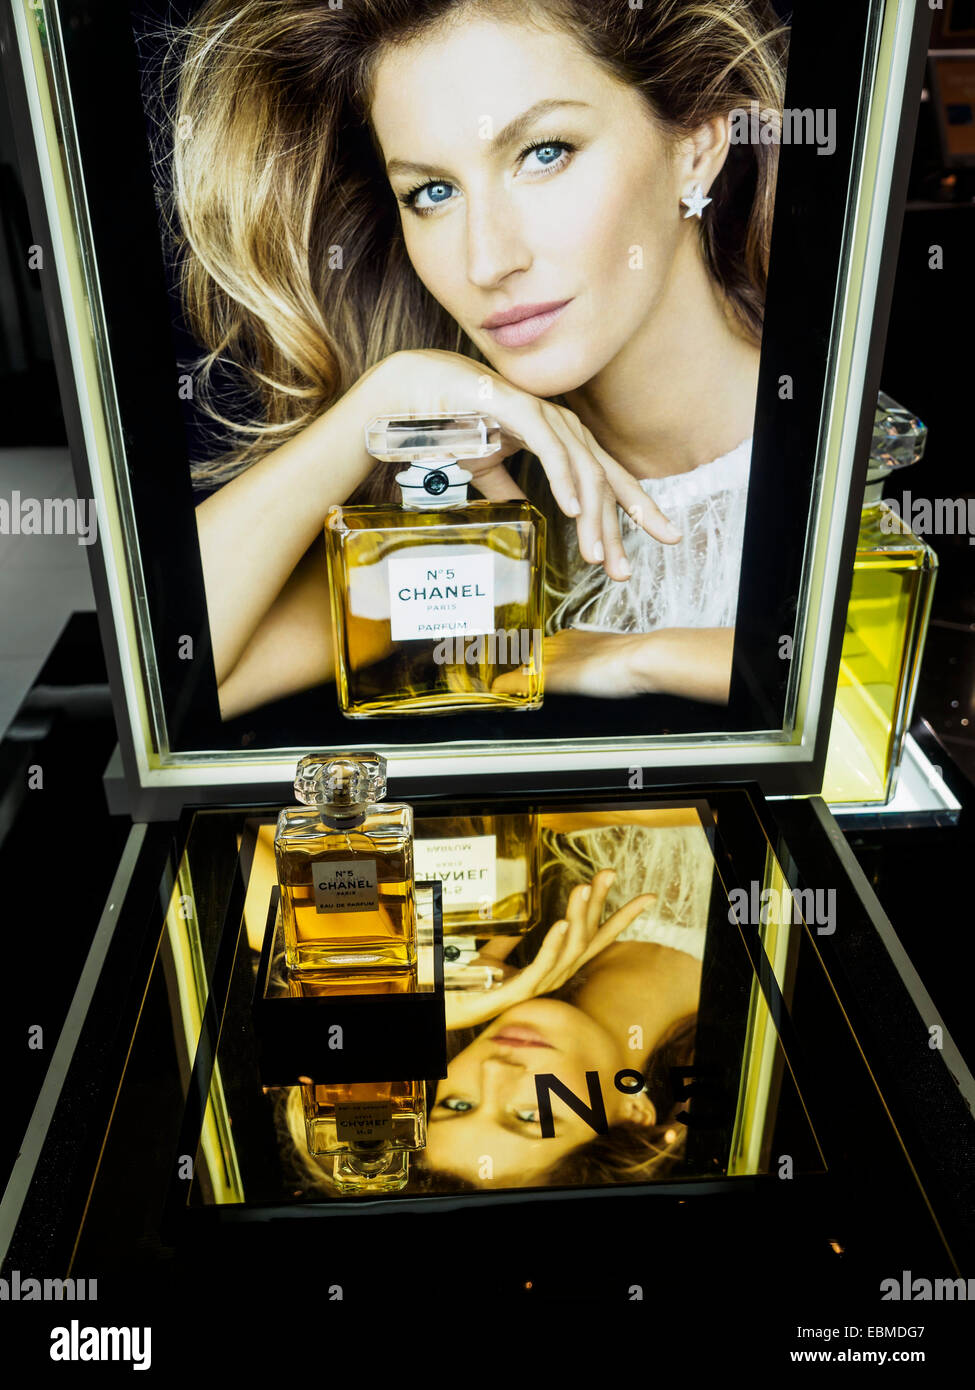 Flacon de parfum Chanel no 5 ad avec Gisele Bundchen Banque D'Images